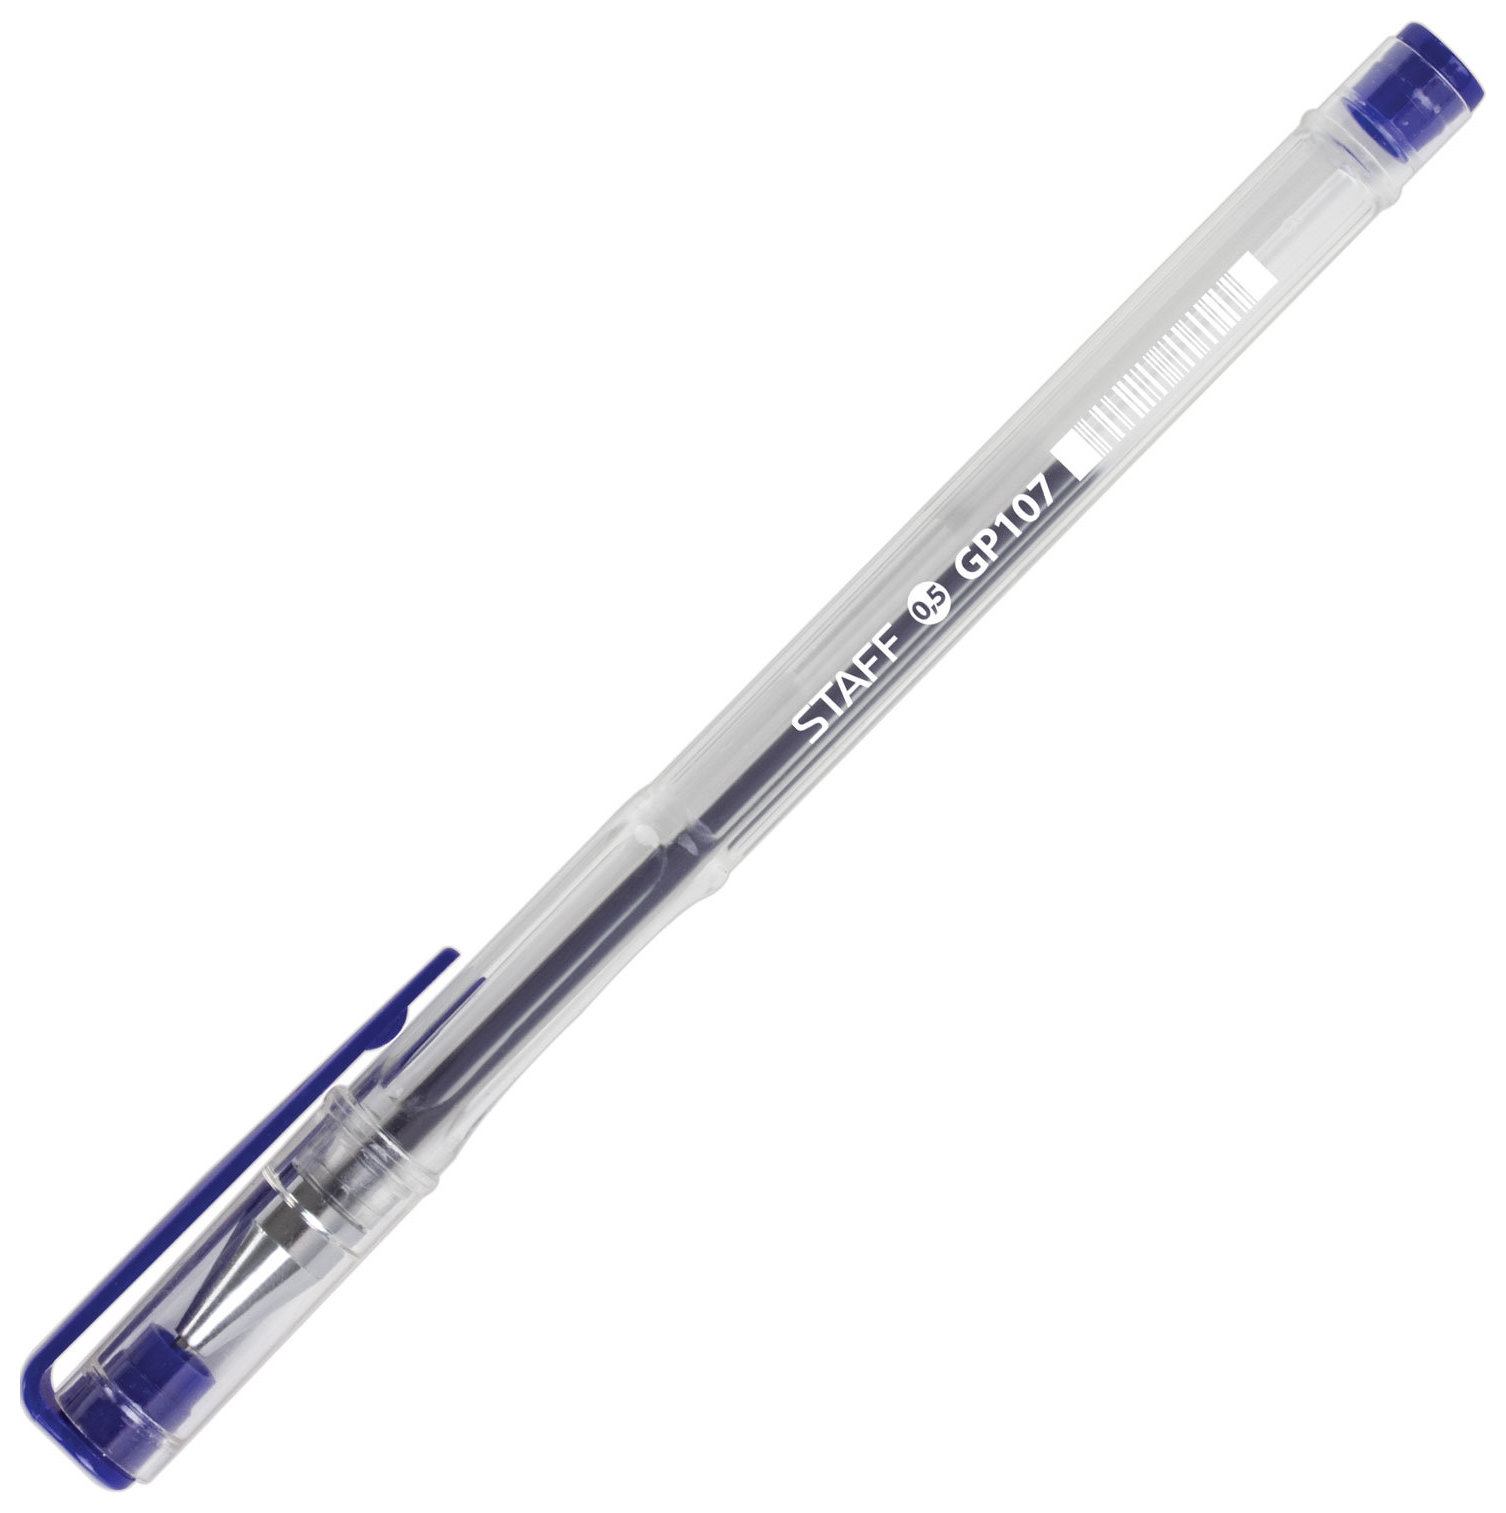 Ручка с прозрачным корпусом. Ручка гелевая синяя staff. Ручка staff Basic. Ручка шариковая синяя (staff 142397). Ручка гелевая staff, 0.35/0.5мм.